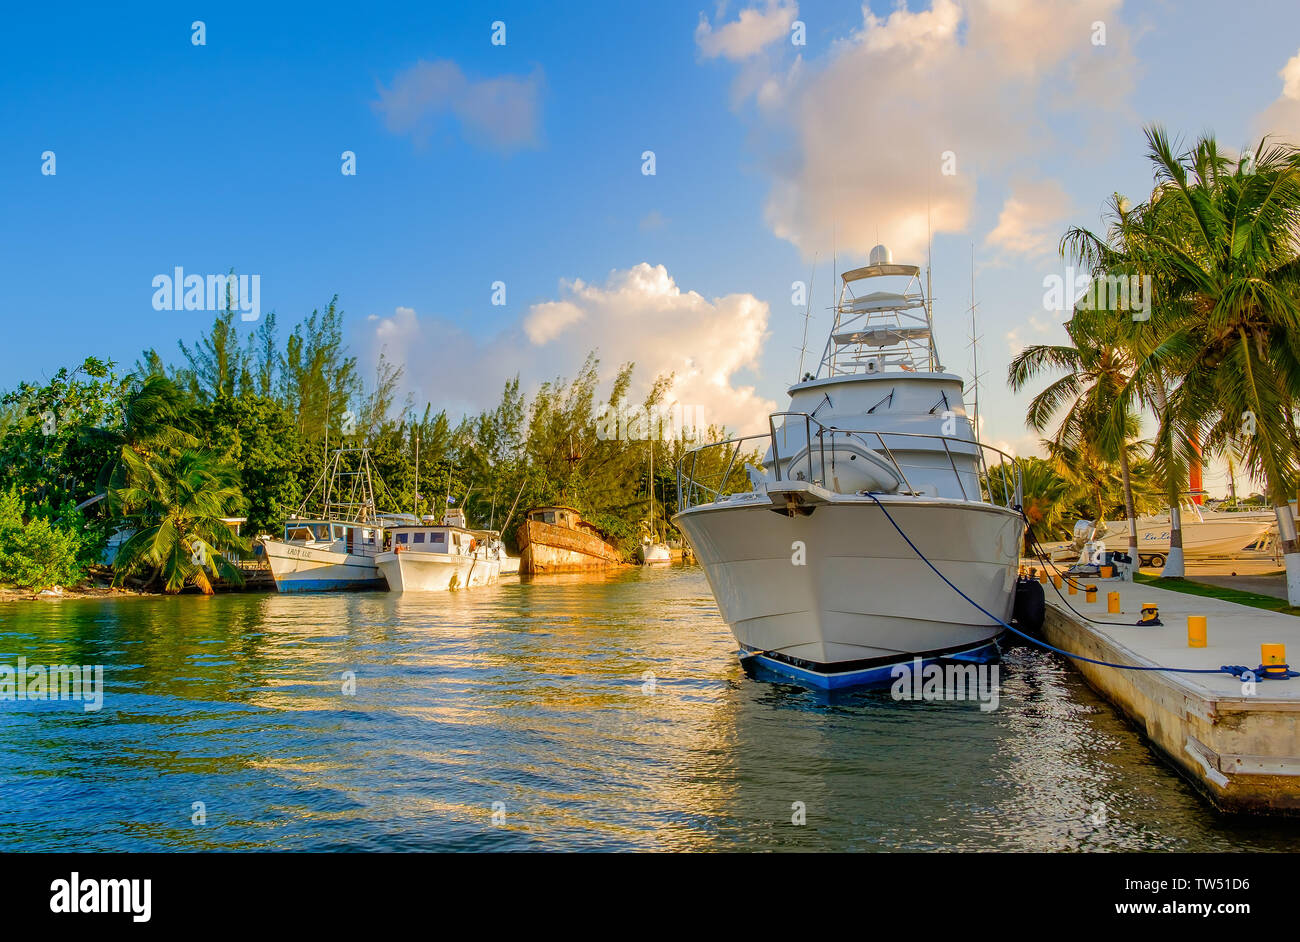 Grand Cayman, îles Caïmans, juin 2018, bateaux dans un des canaux conduisant à la mer des Caraïbes Banque D'Images